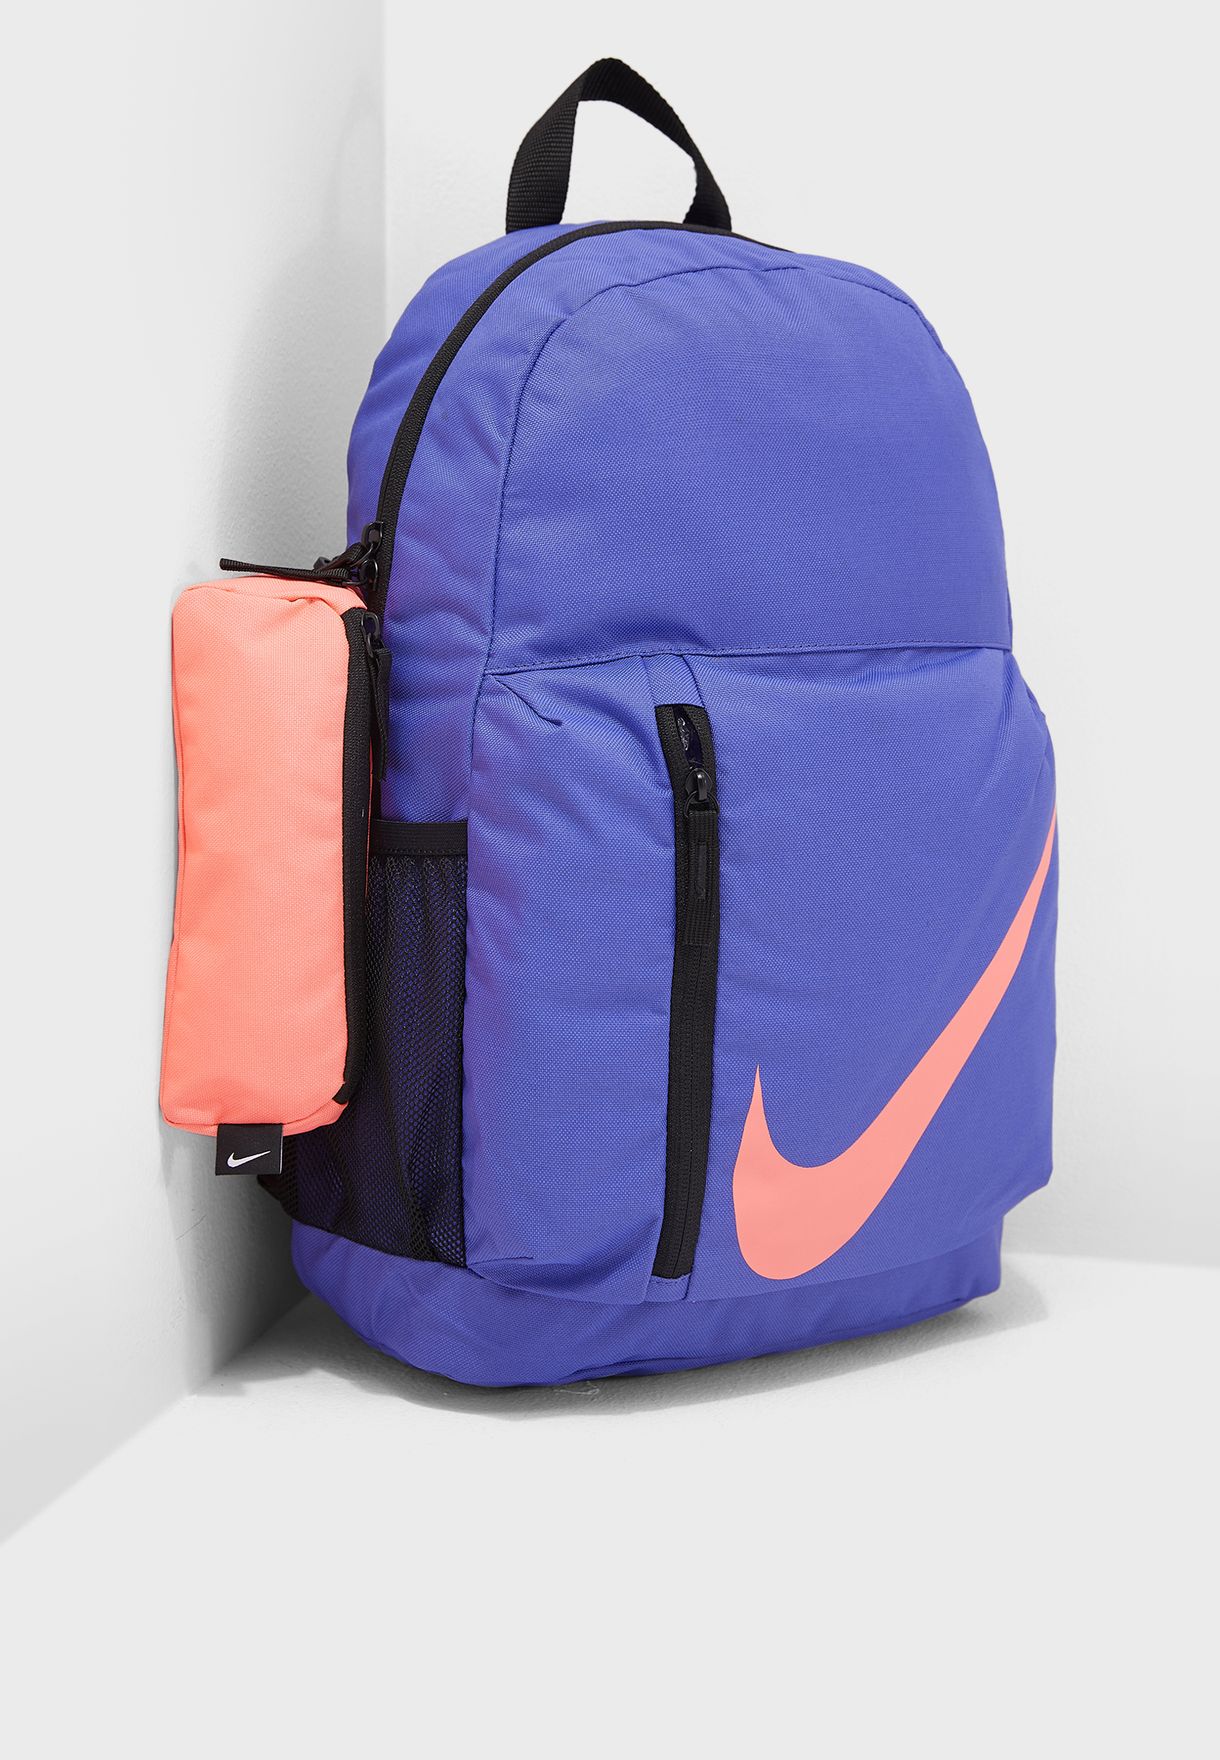 nike purple backpack